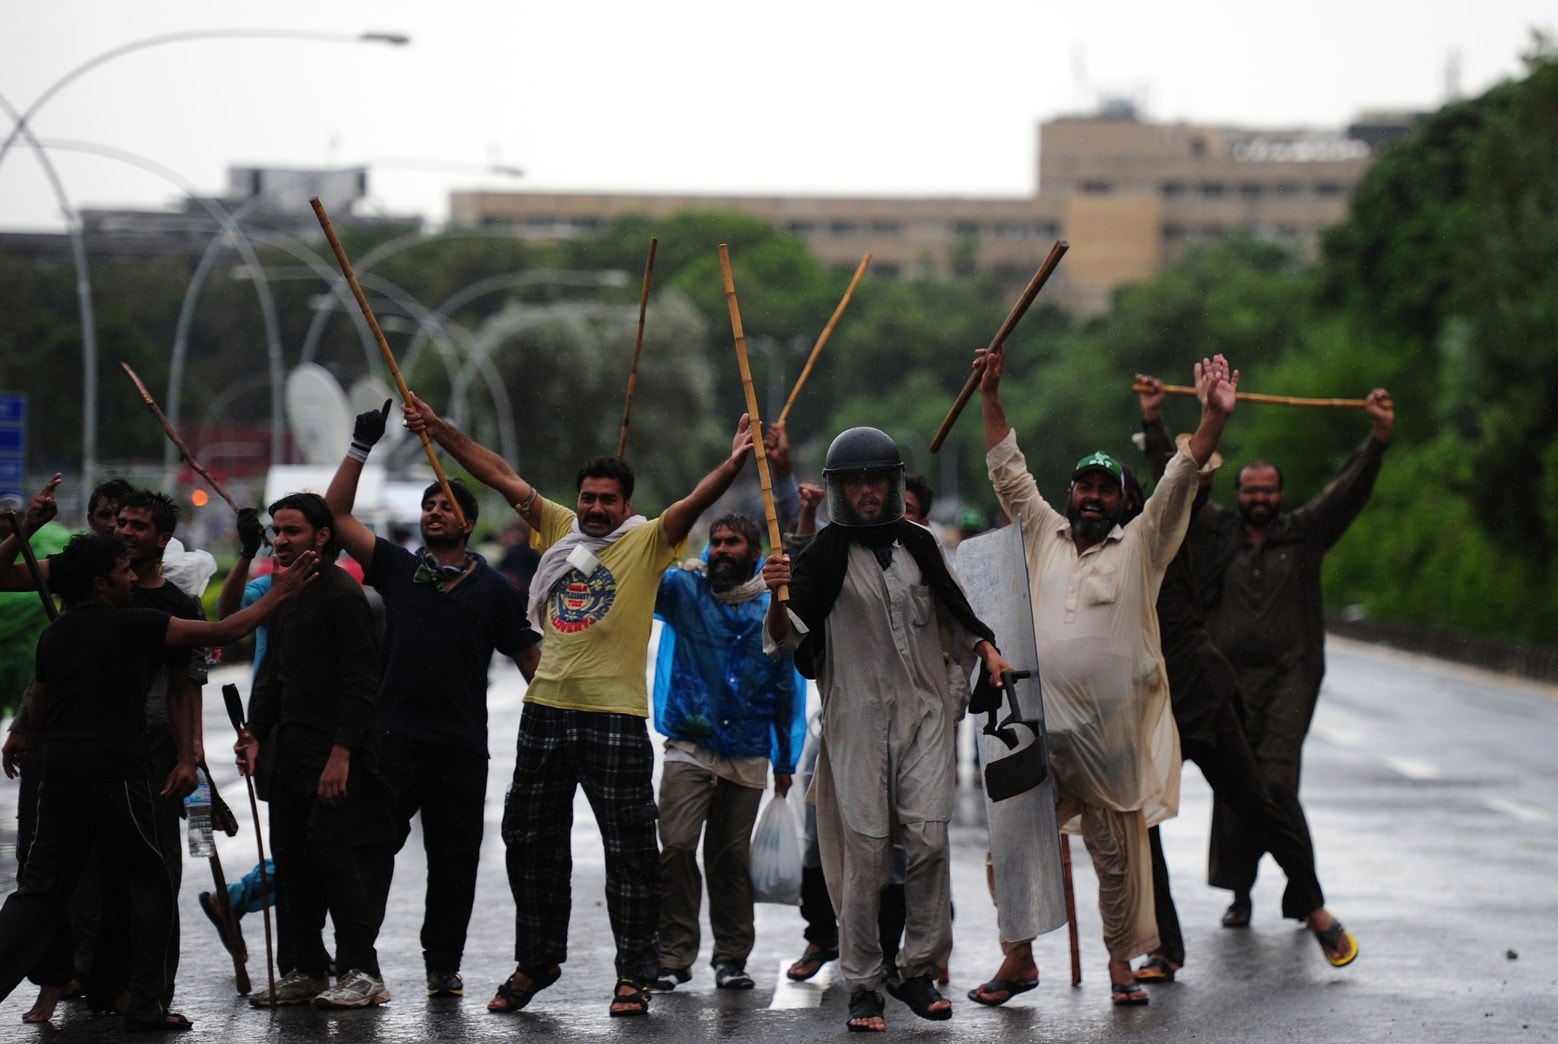 Staatstelevisie Pakistan binnengevallen door betogers